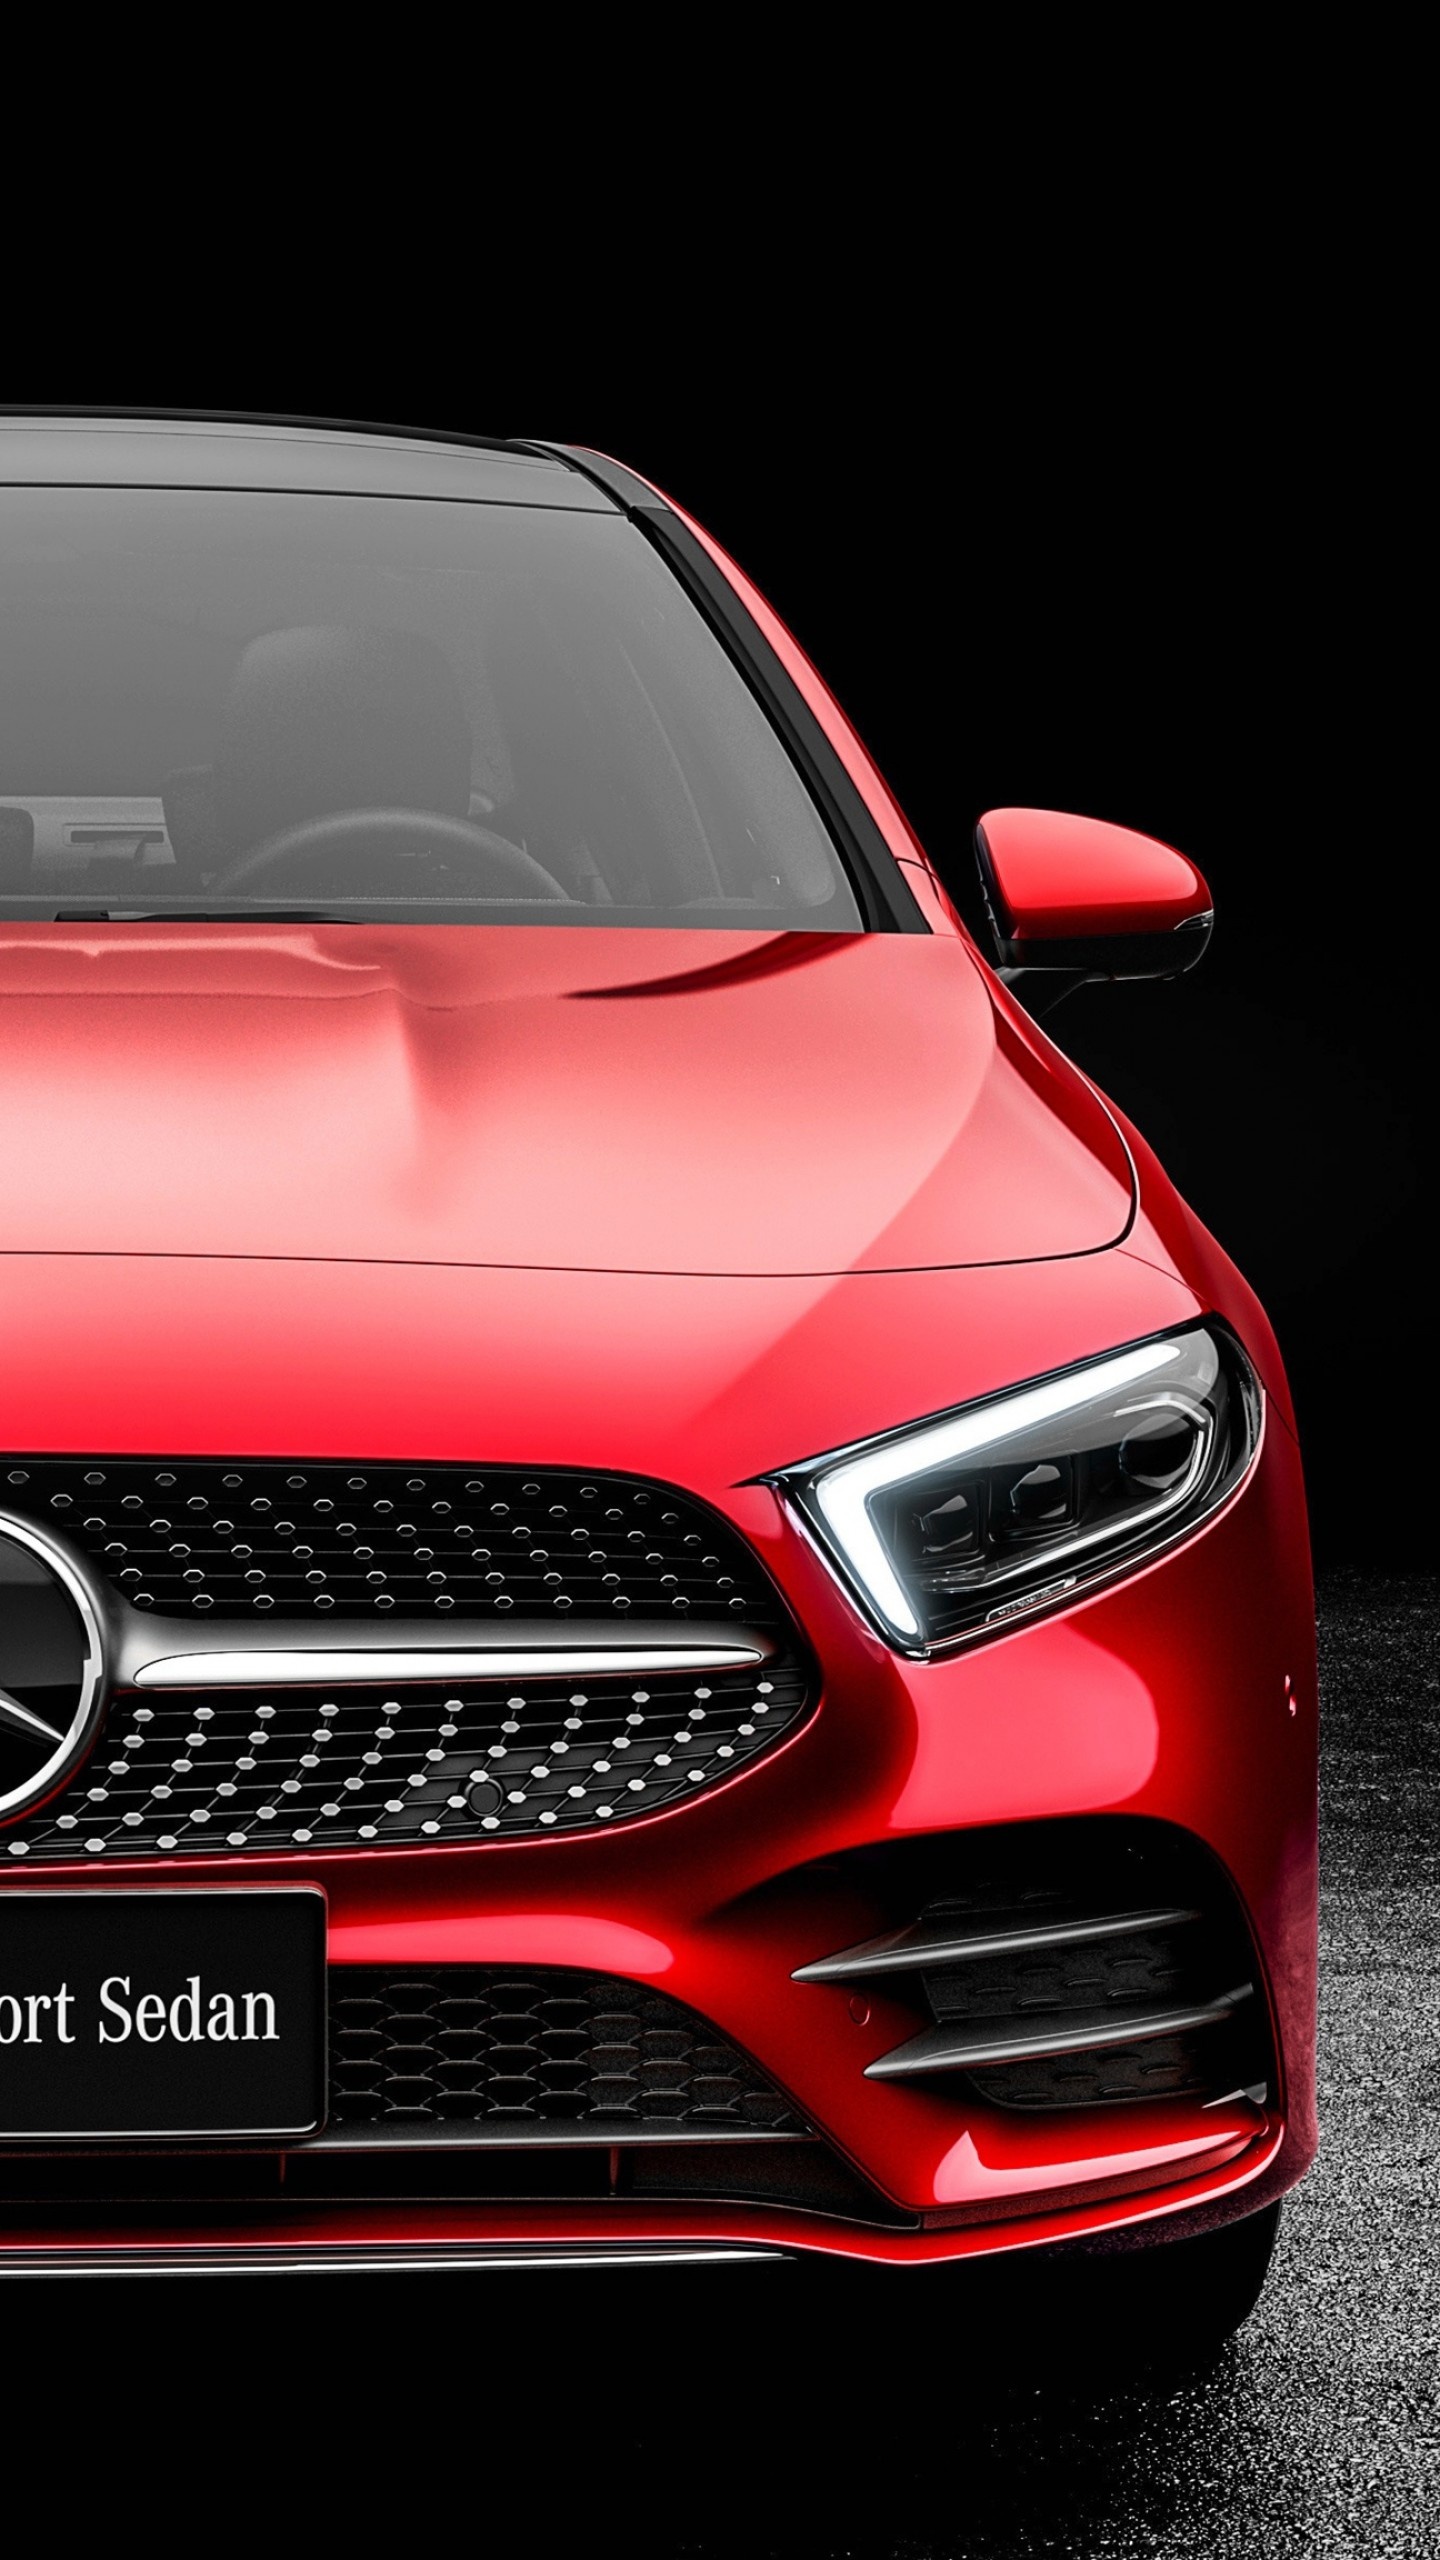 Mercedes-Benz A-Class, L Sedan model, 2019 release, Stunning 4k wallpaper, 1440x2560 HD Handy